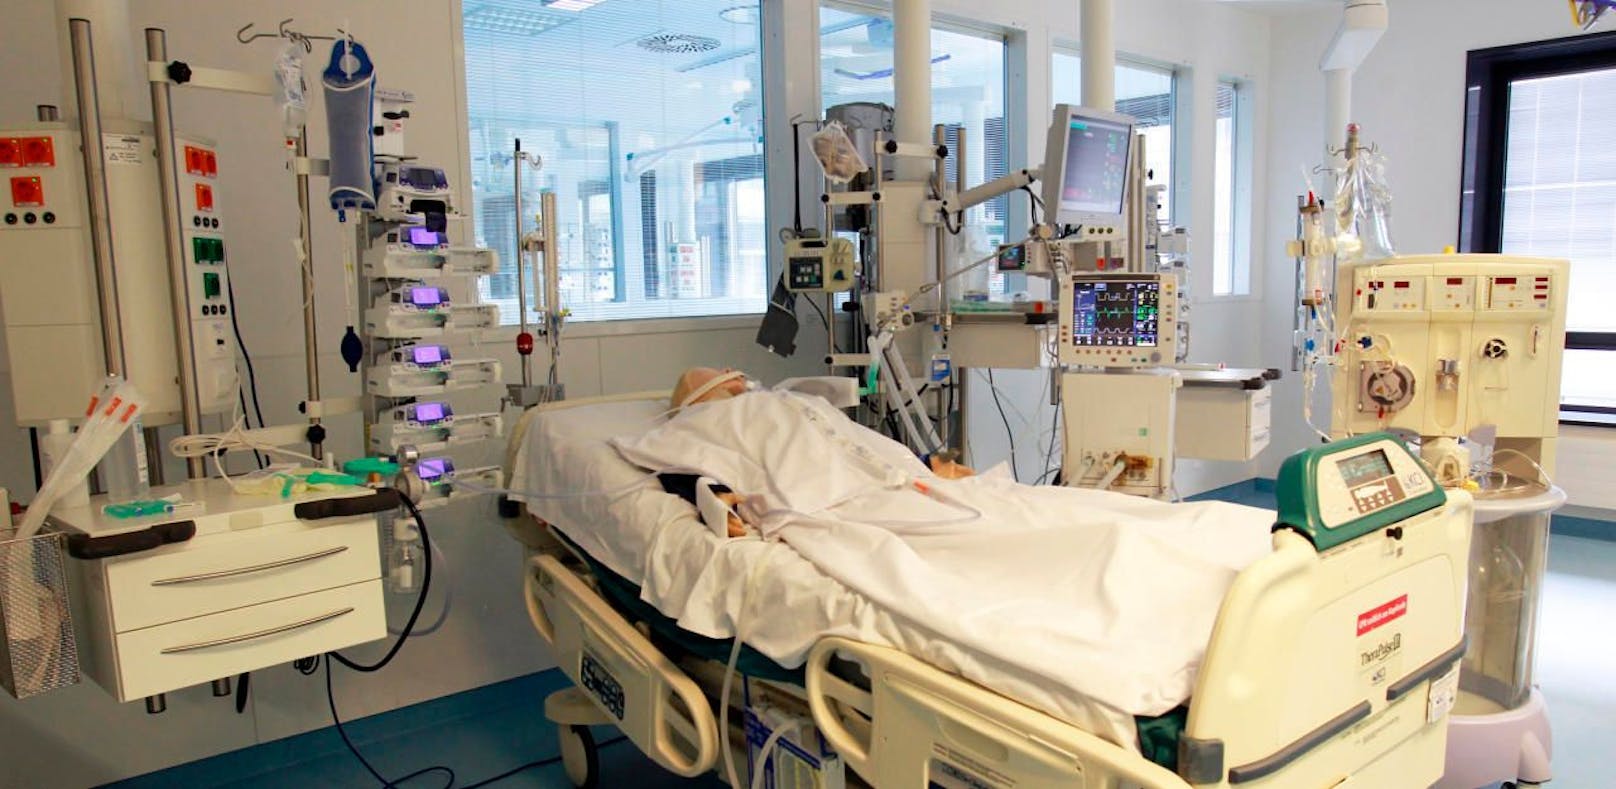 Laut dem KAV sei die aktuelle Situation der Spitalsbettenauslastung in Wien eine gute. Rund ein Drittel der Normalbetten sei derzeit frei, dasselbe gelte für Intensivbetten. 